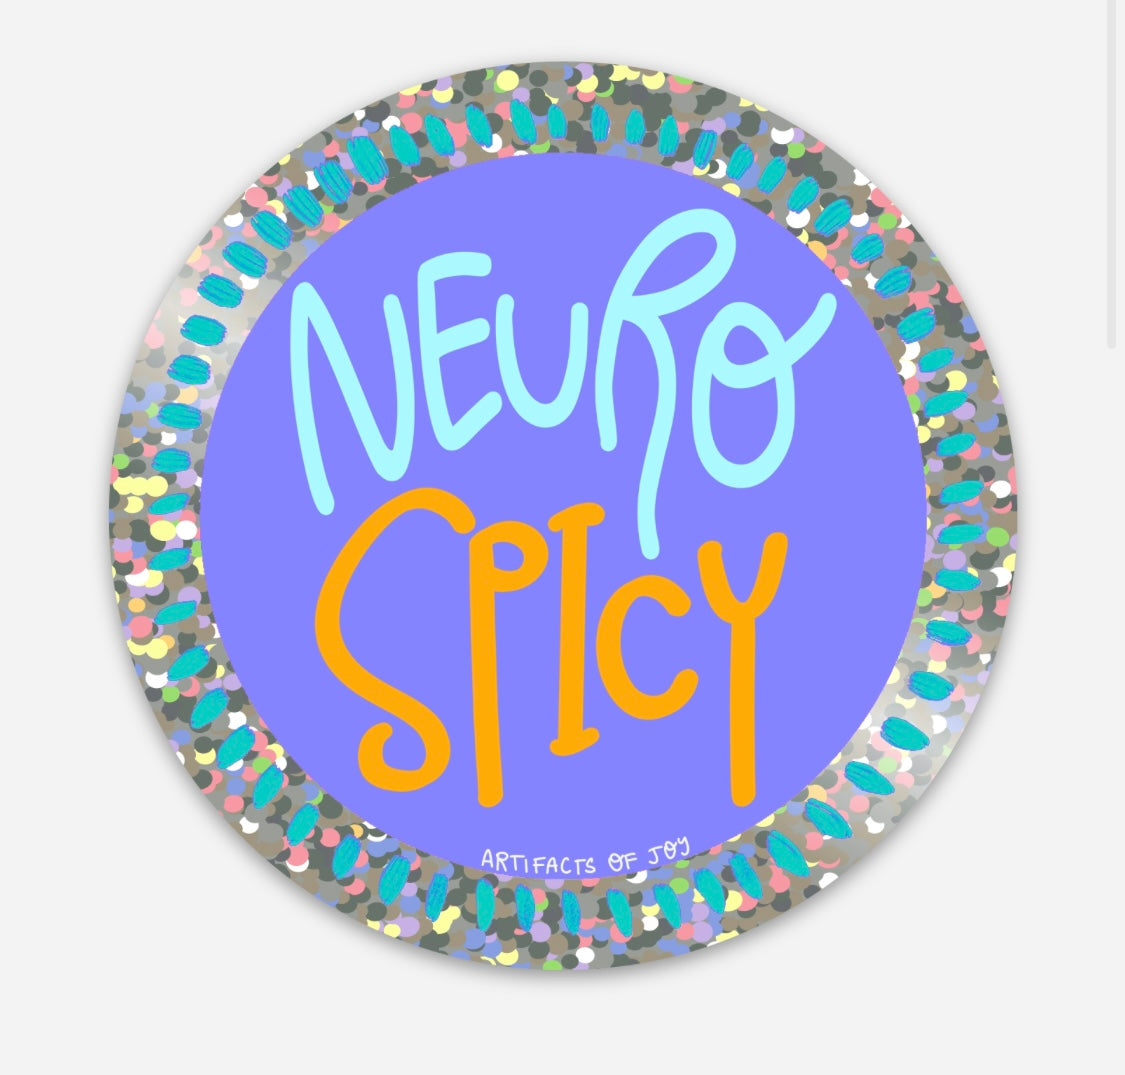 Sticker Neuro Spicy